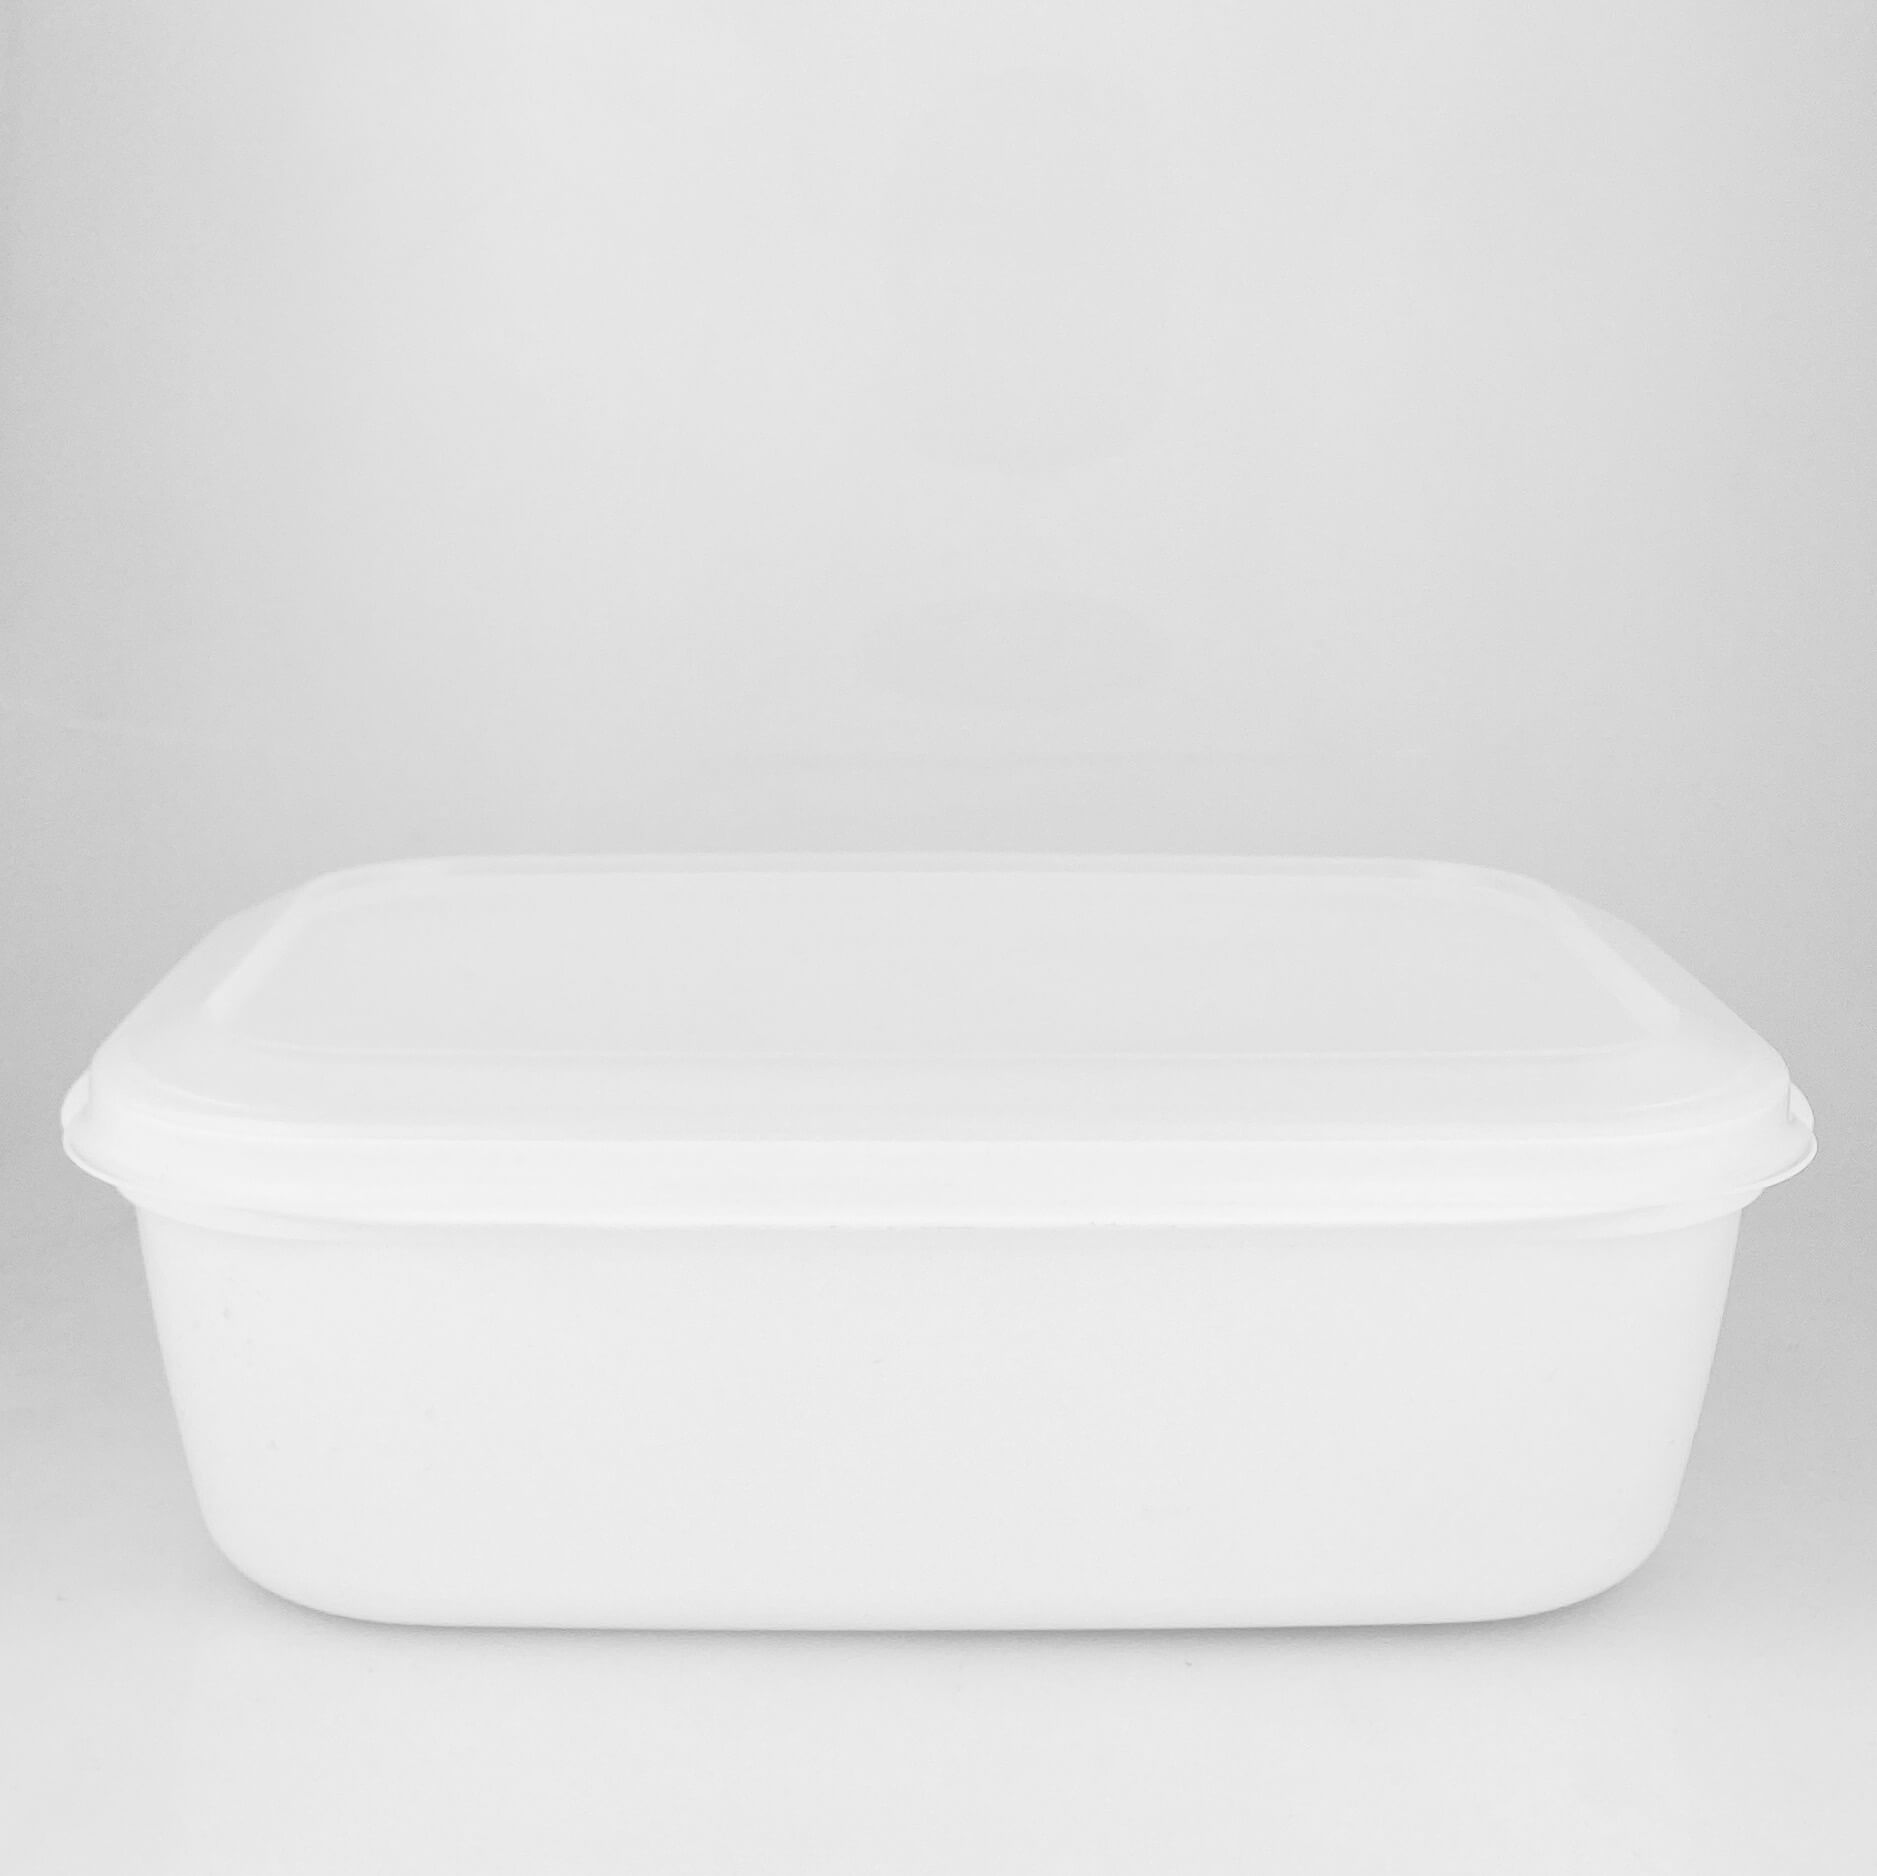 Ringo BOX 1700ml white square